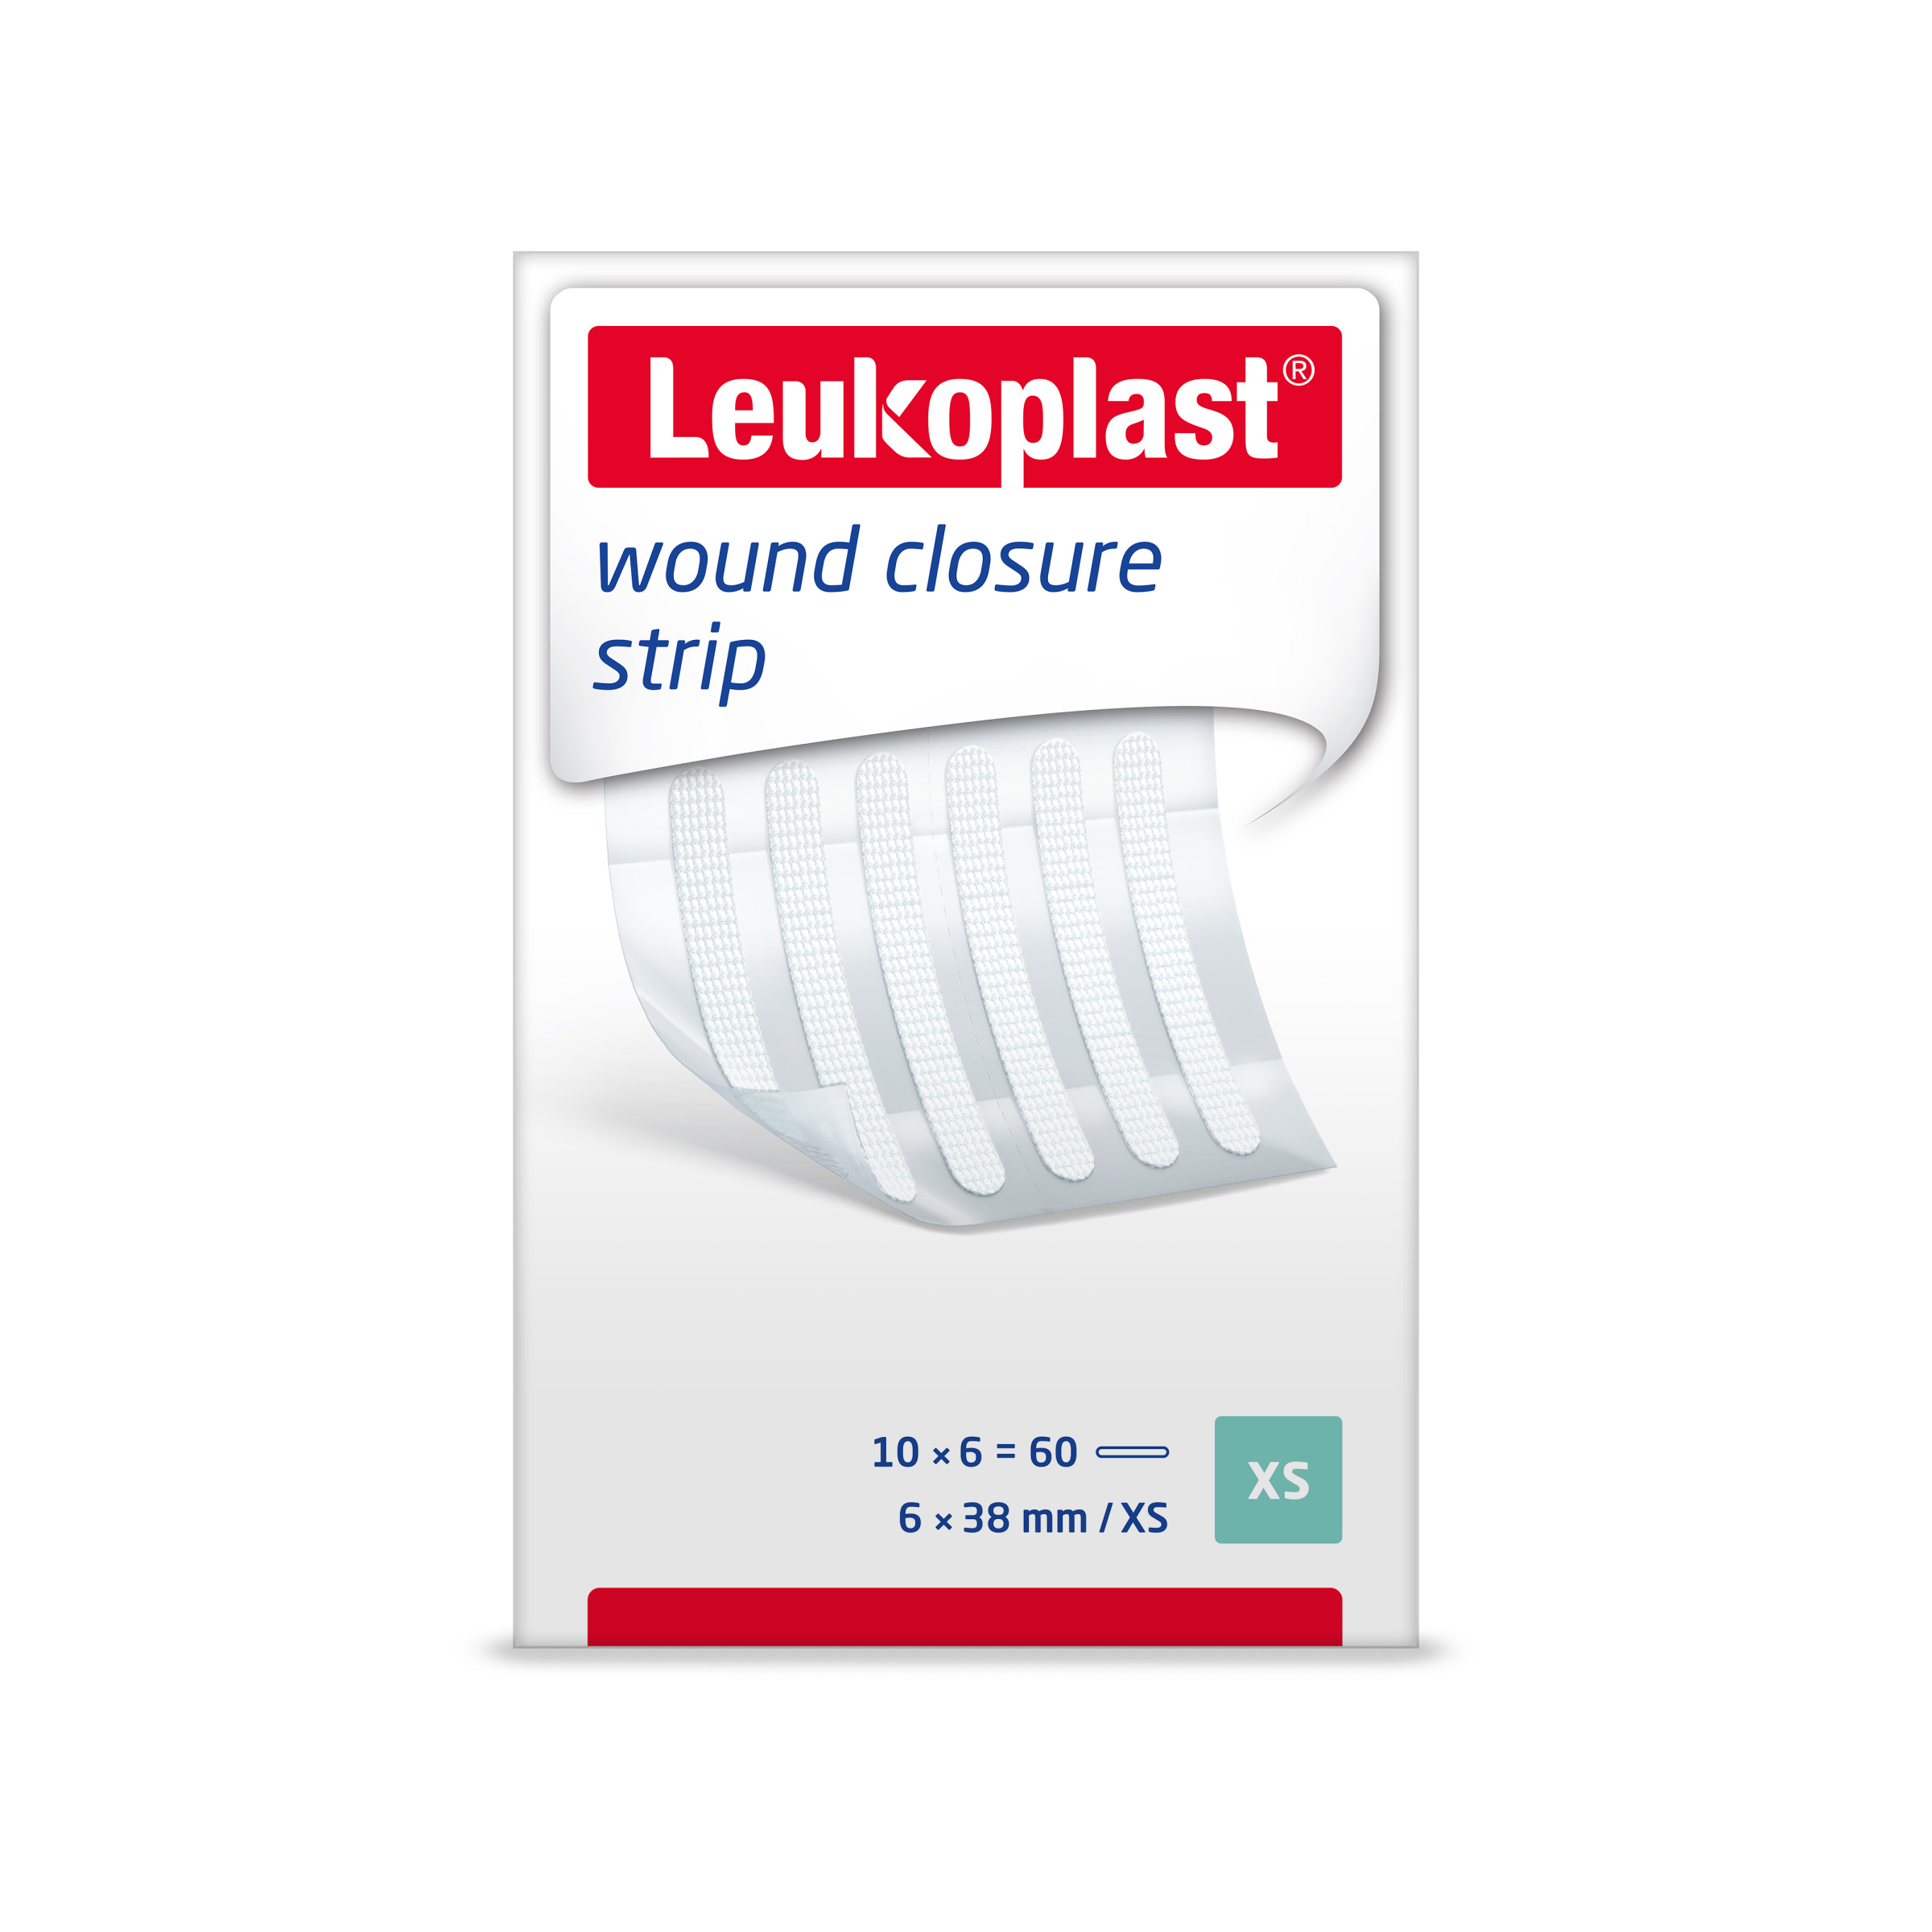 Leukoplast wound closure strip, 10 Peelbeuteln, weiß, steril